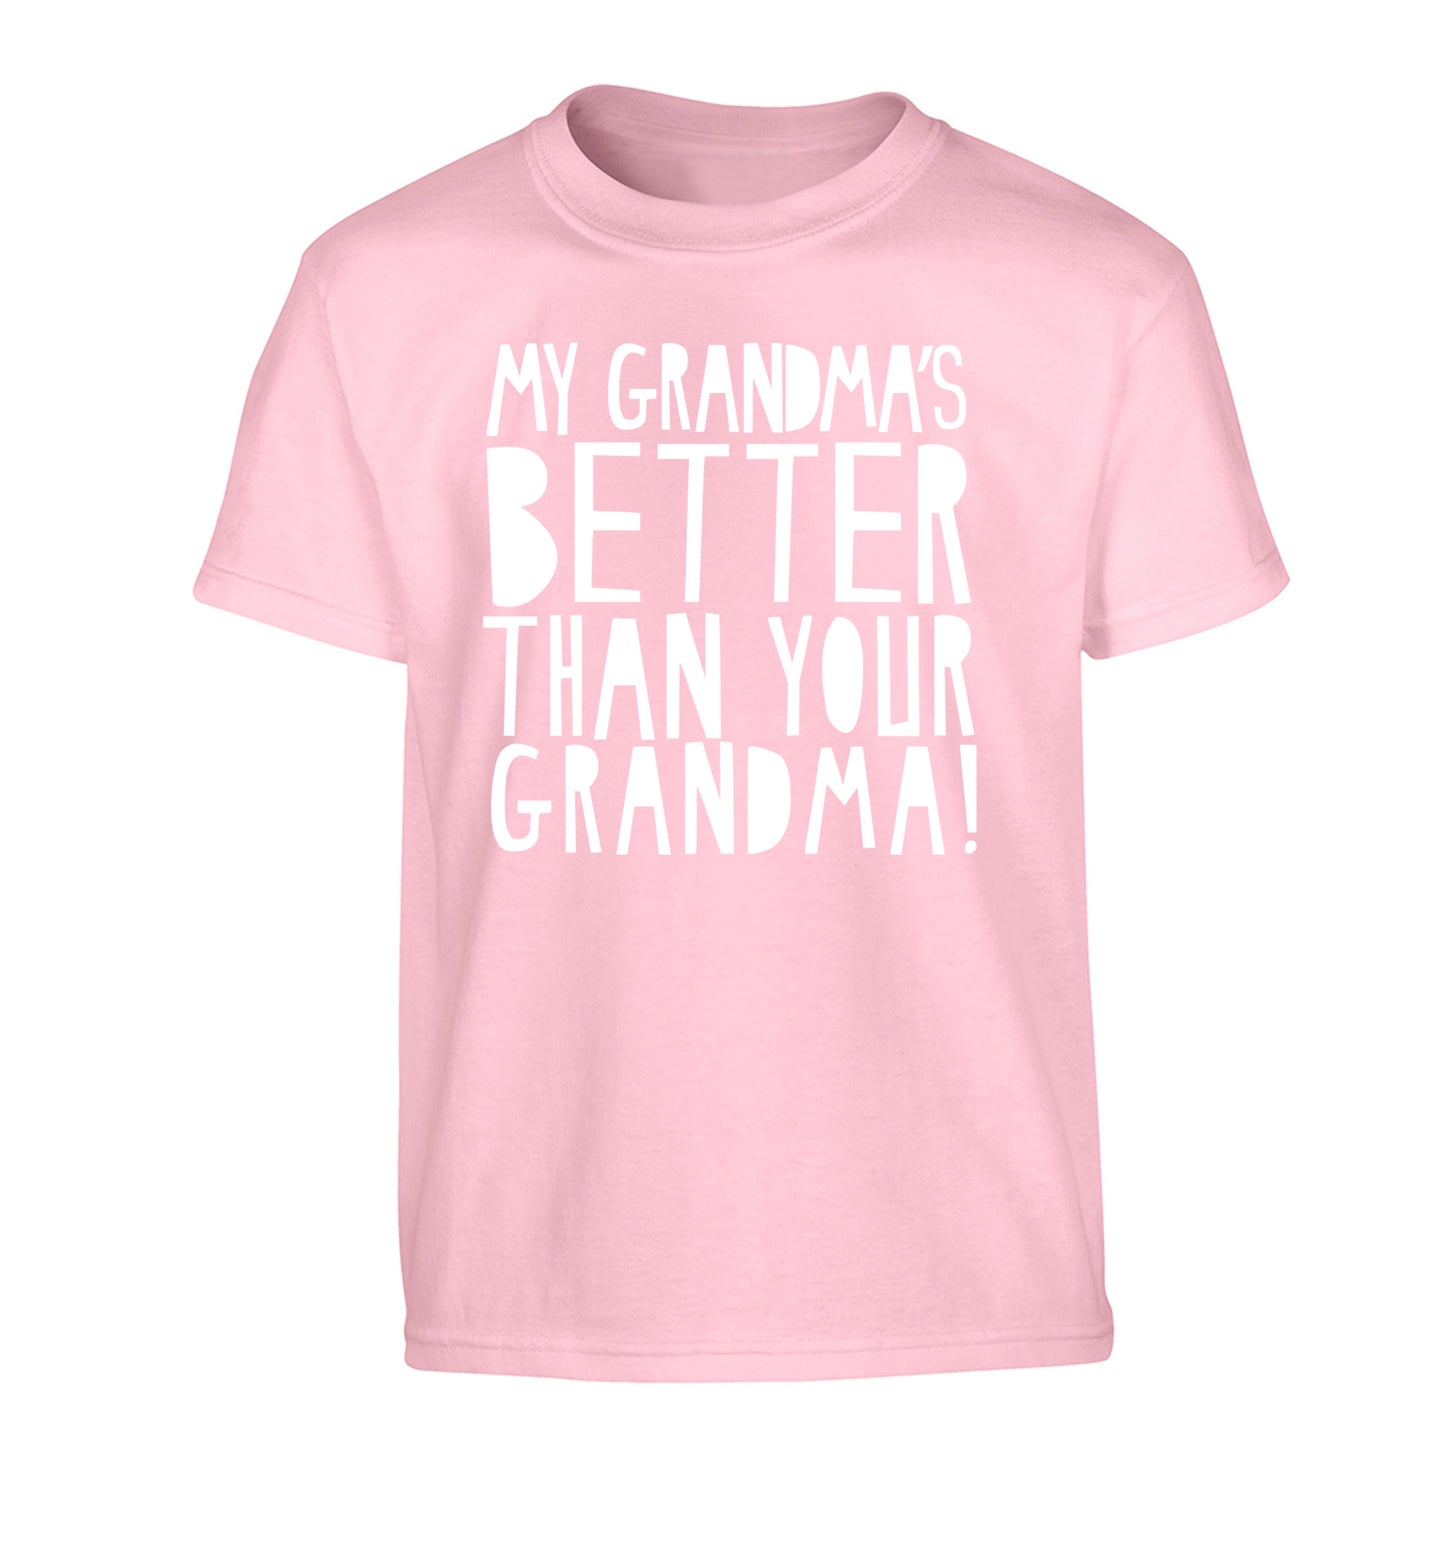 My grandma's better than your grandma Children's light pink Tshirt 12-13 Years